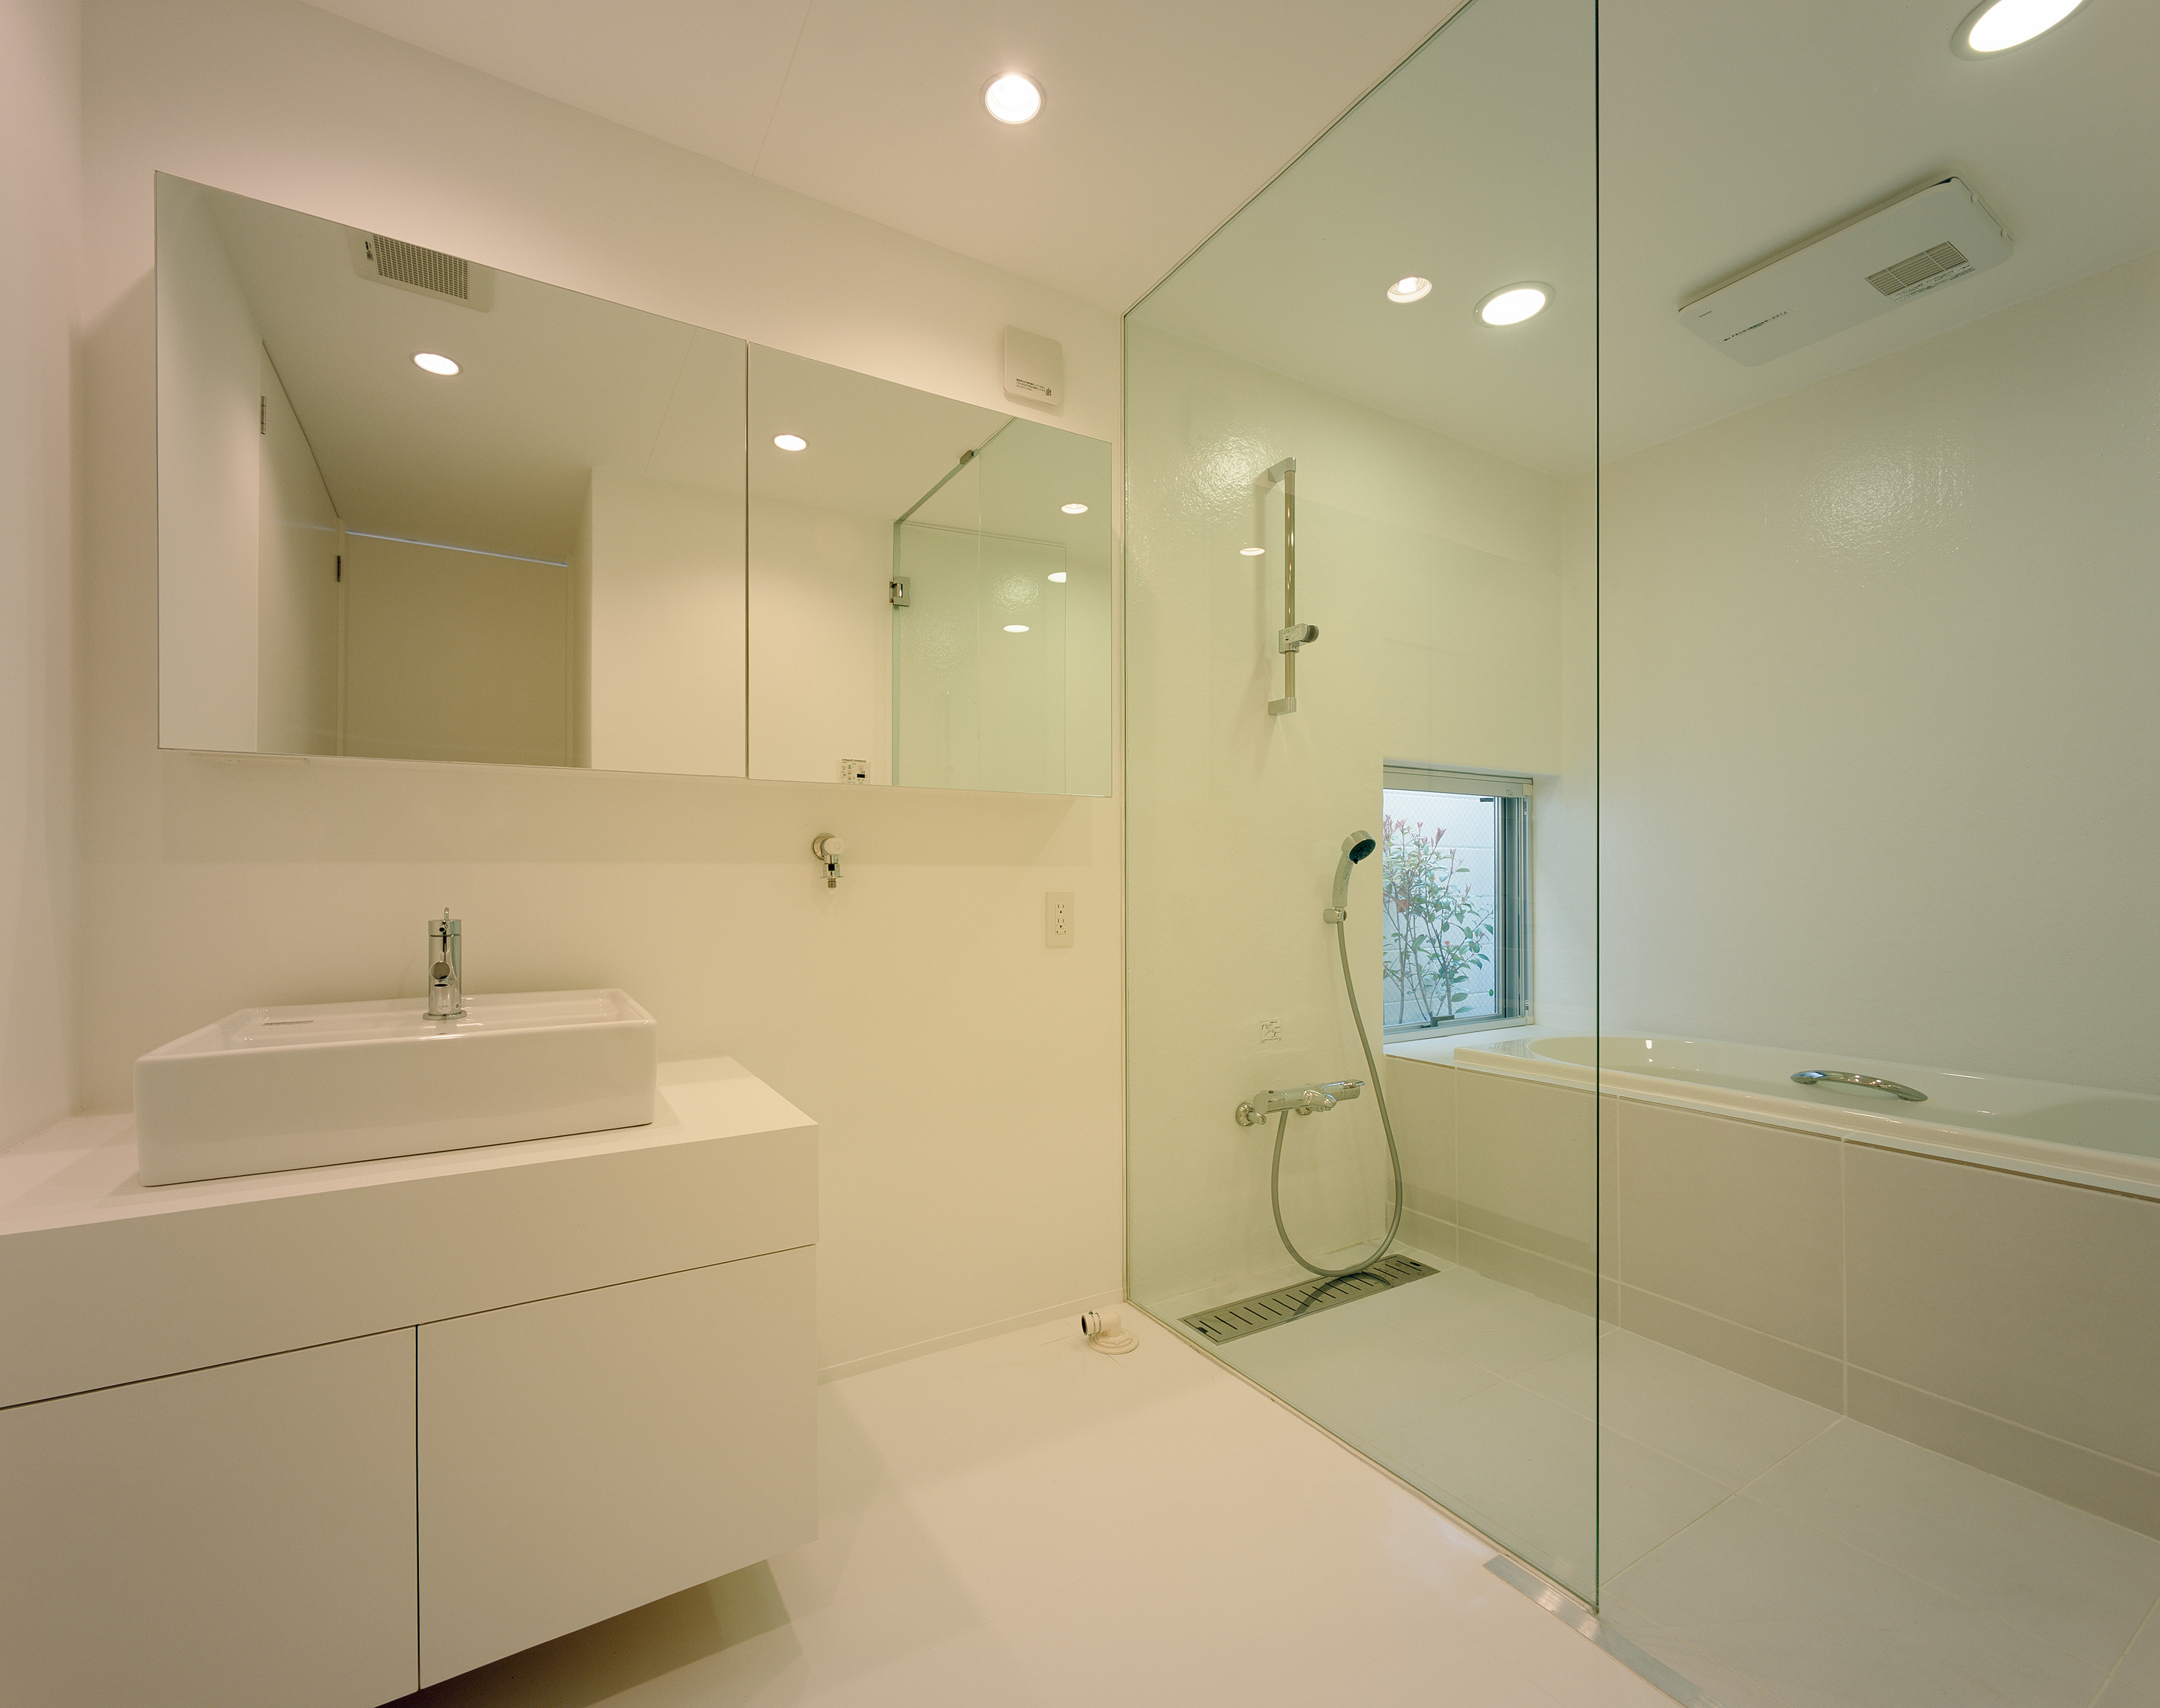 ガラスの壁・扉、鏡も洗面台も浮かせるようなデザインが、空気を軽く感じる洗面・浴室